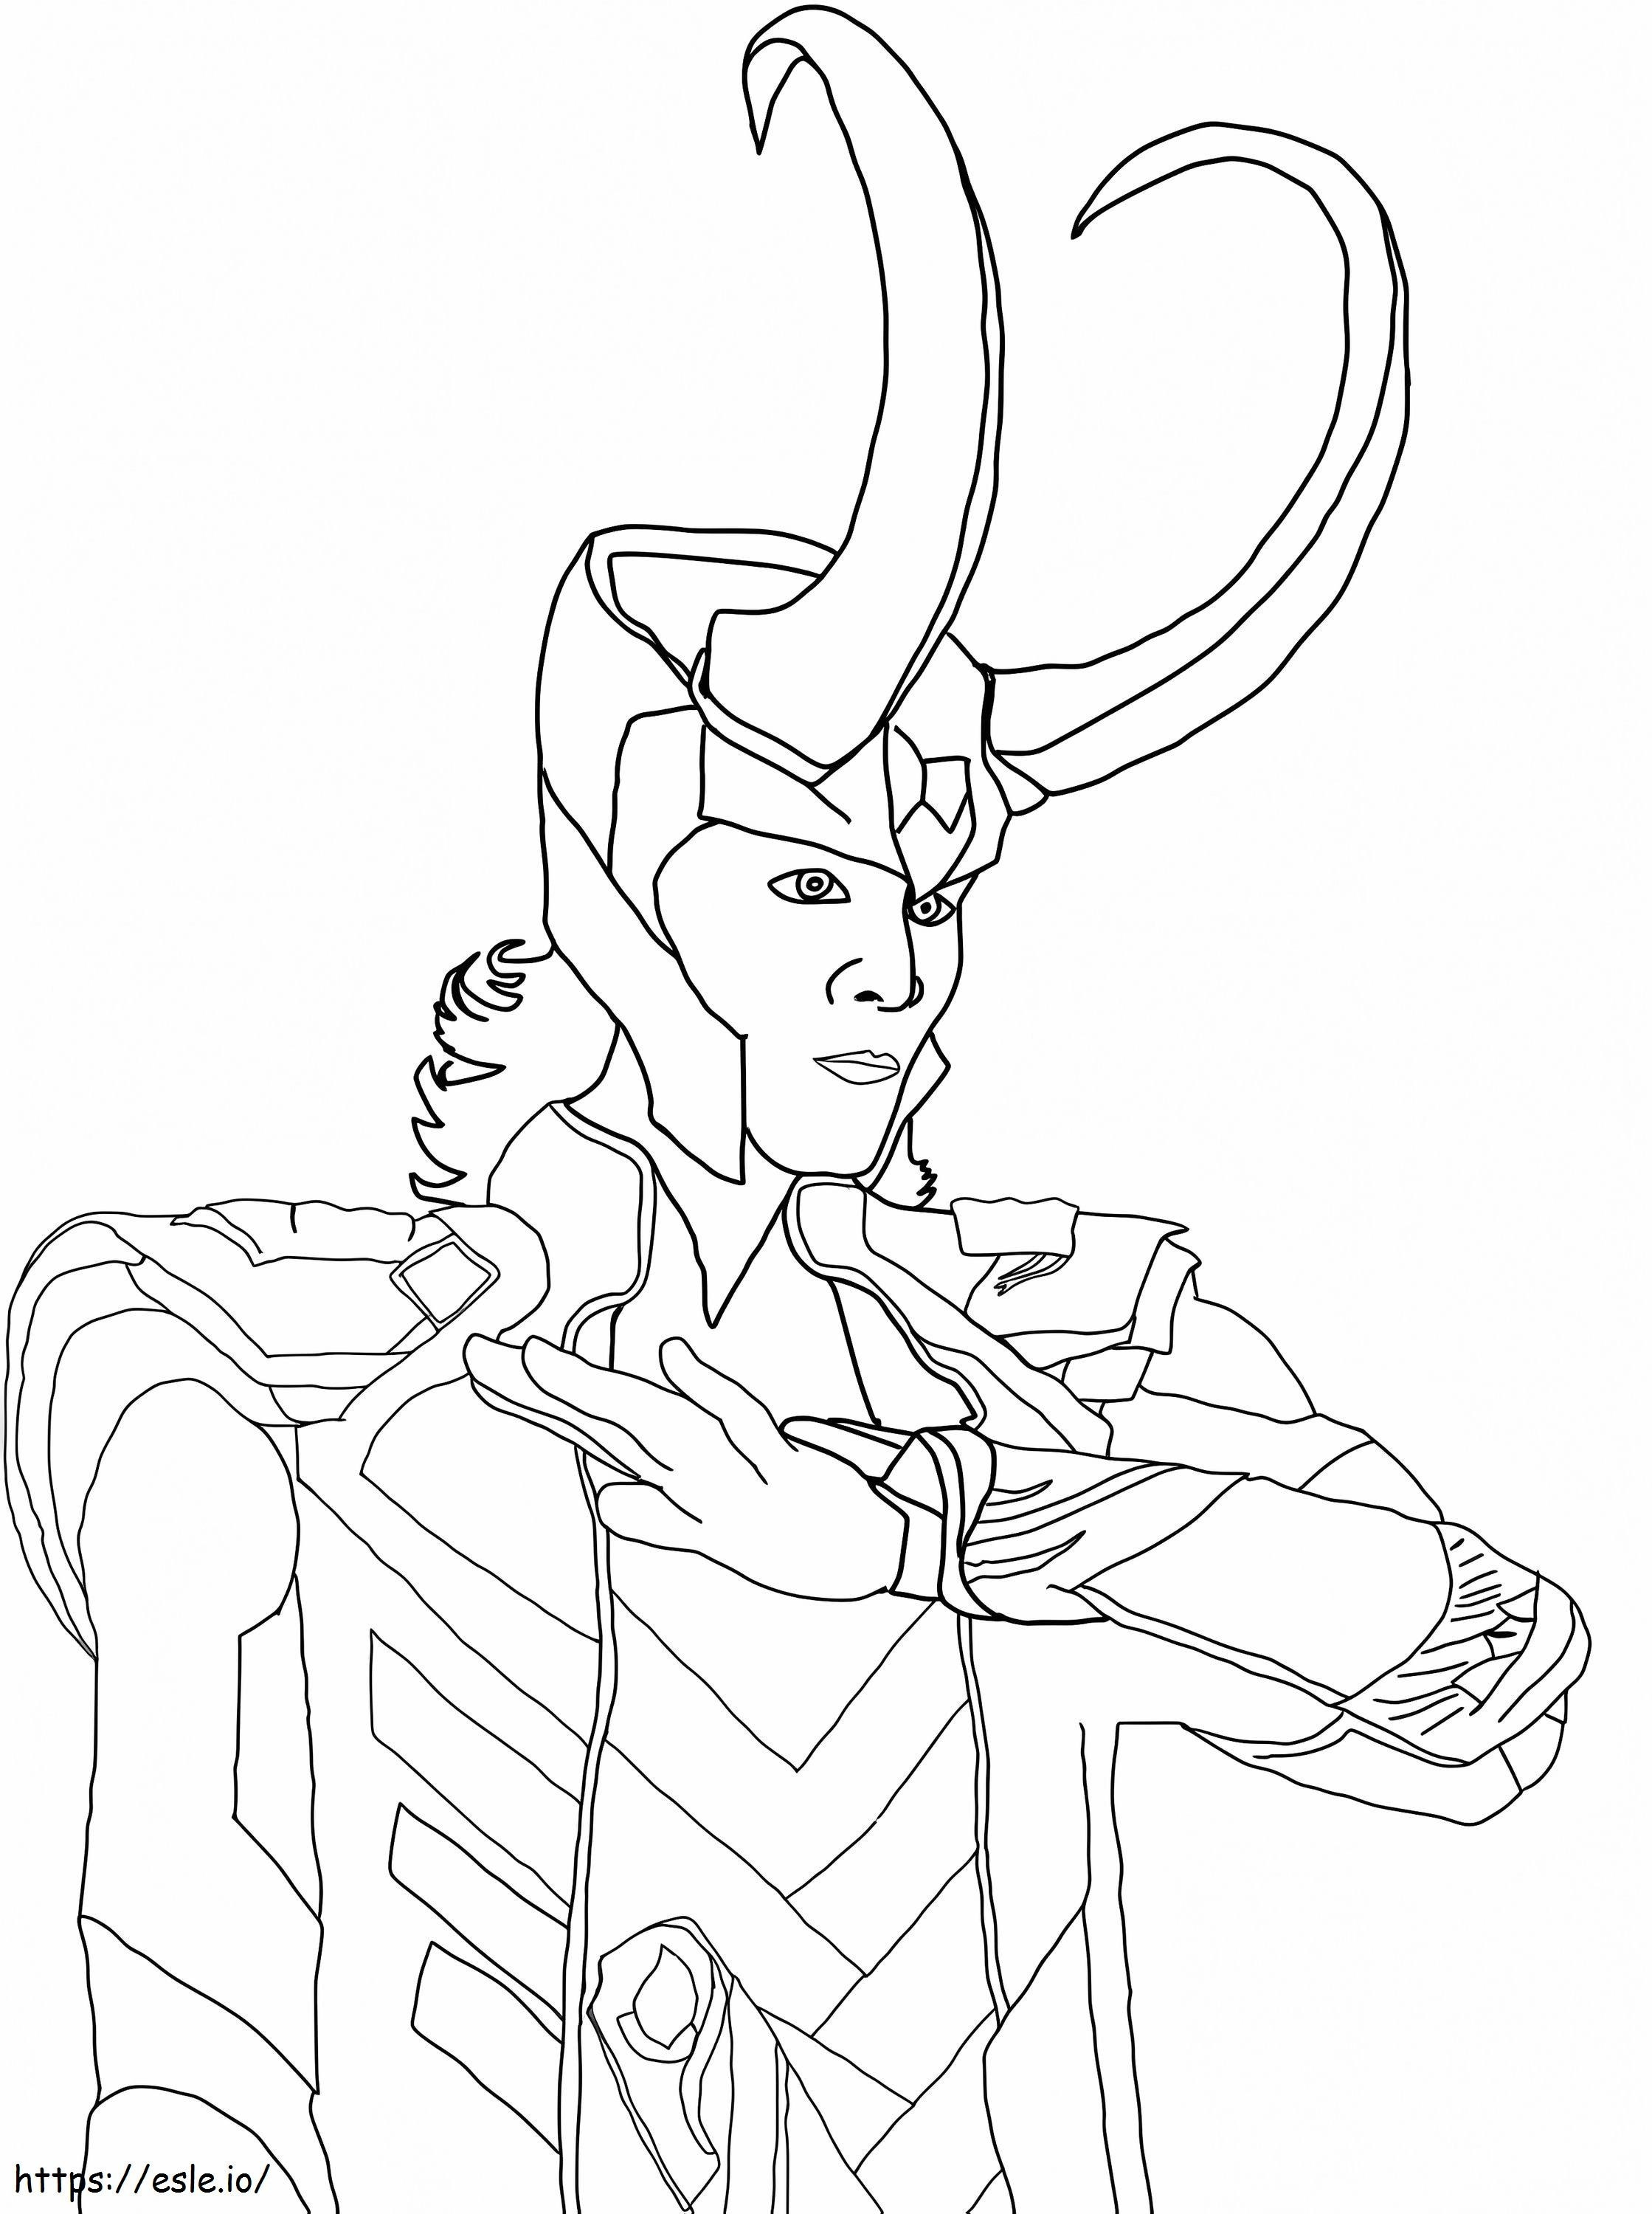 Bad Loki coloring page